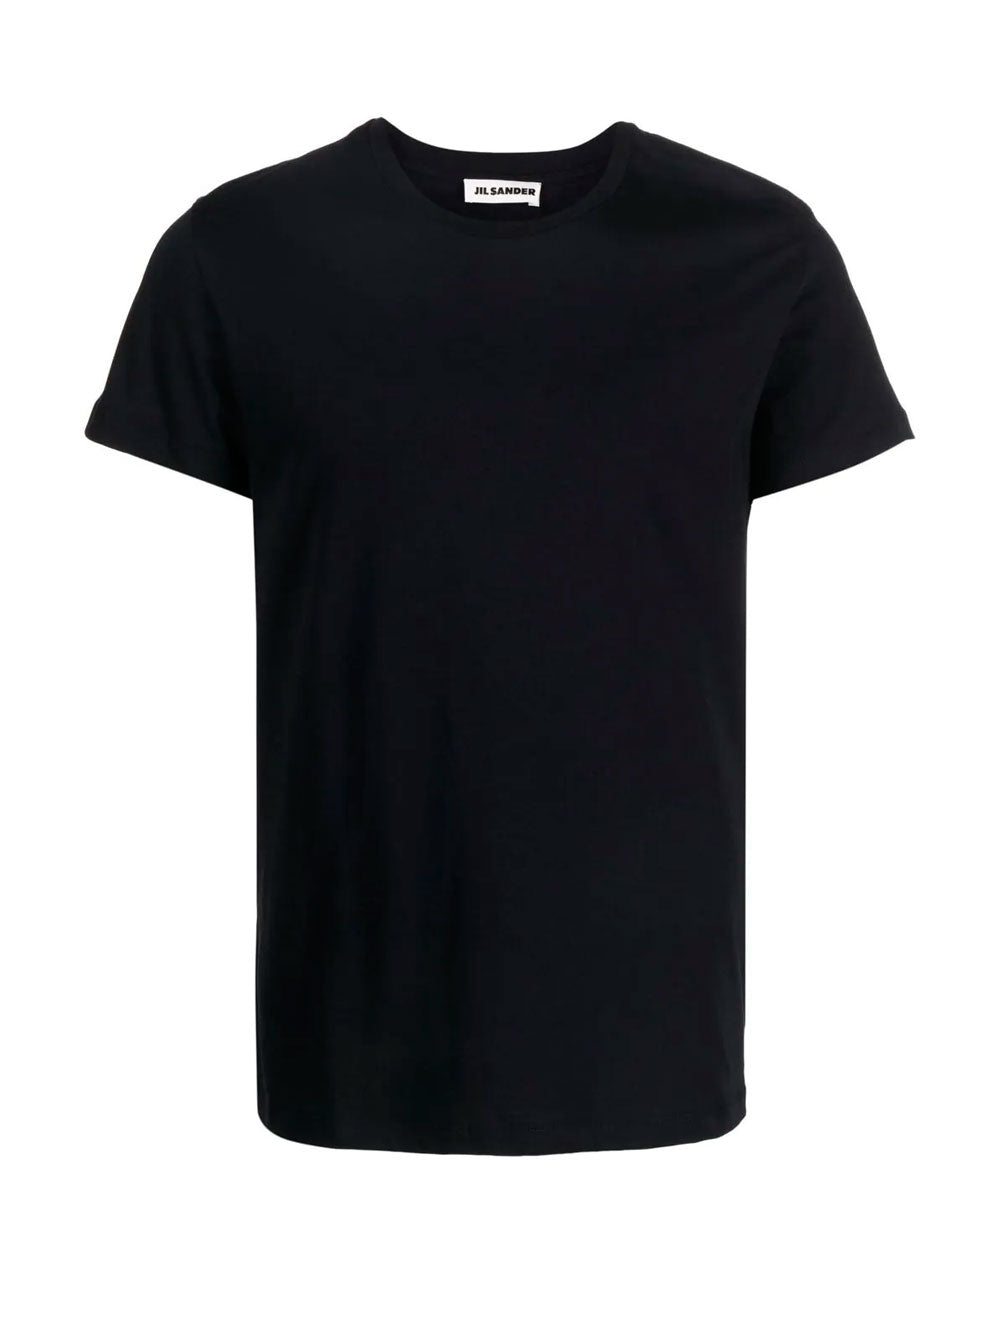 Short-sleeve cotton t-shirt